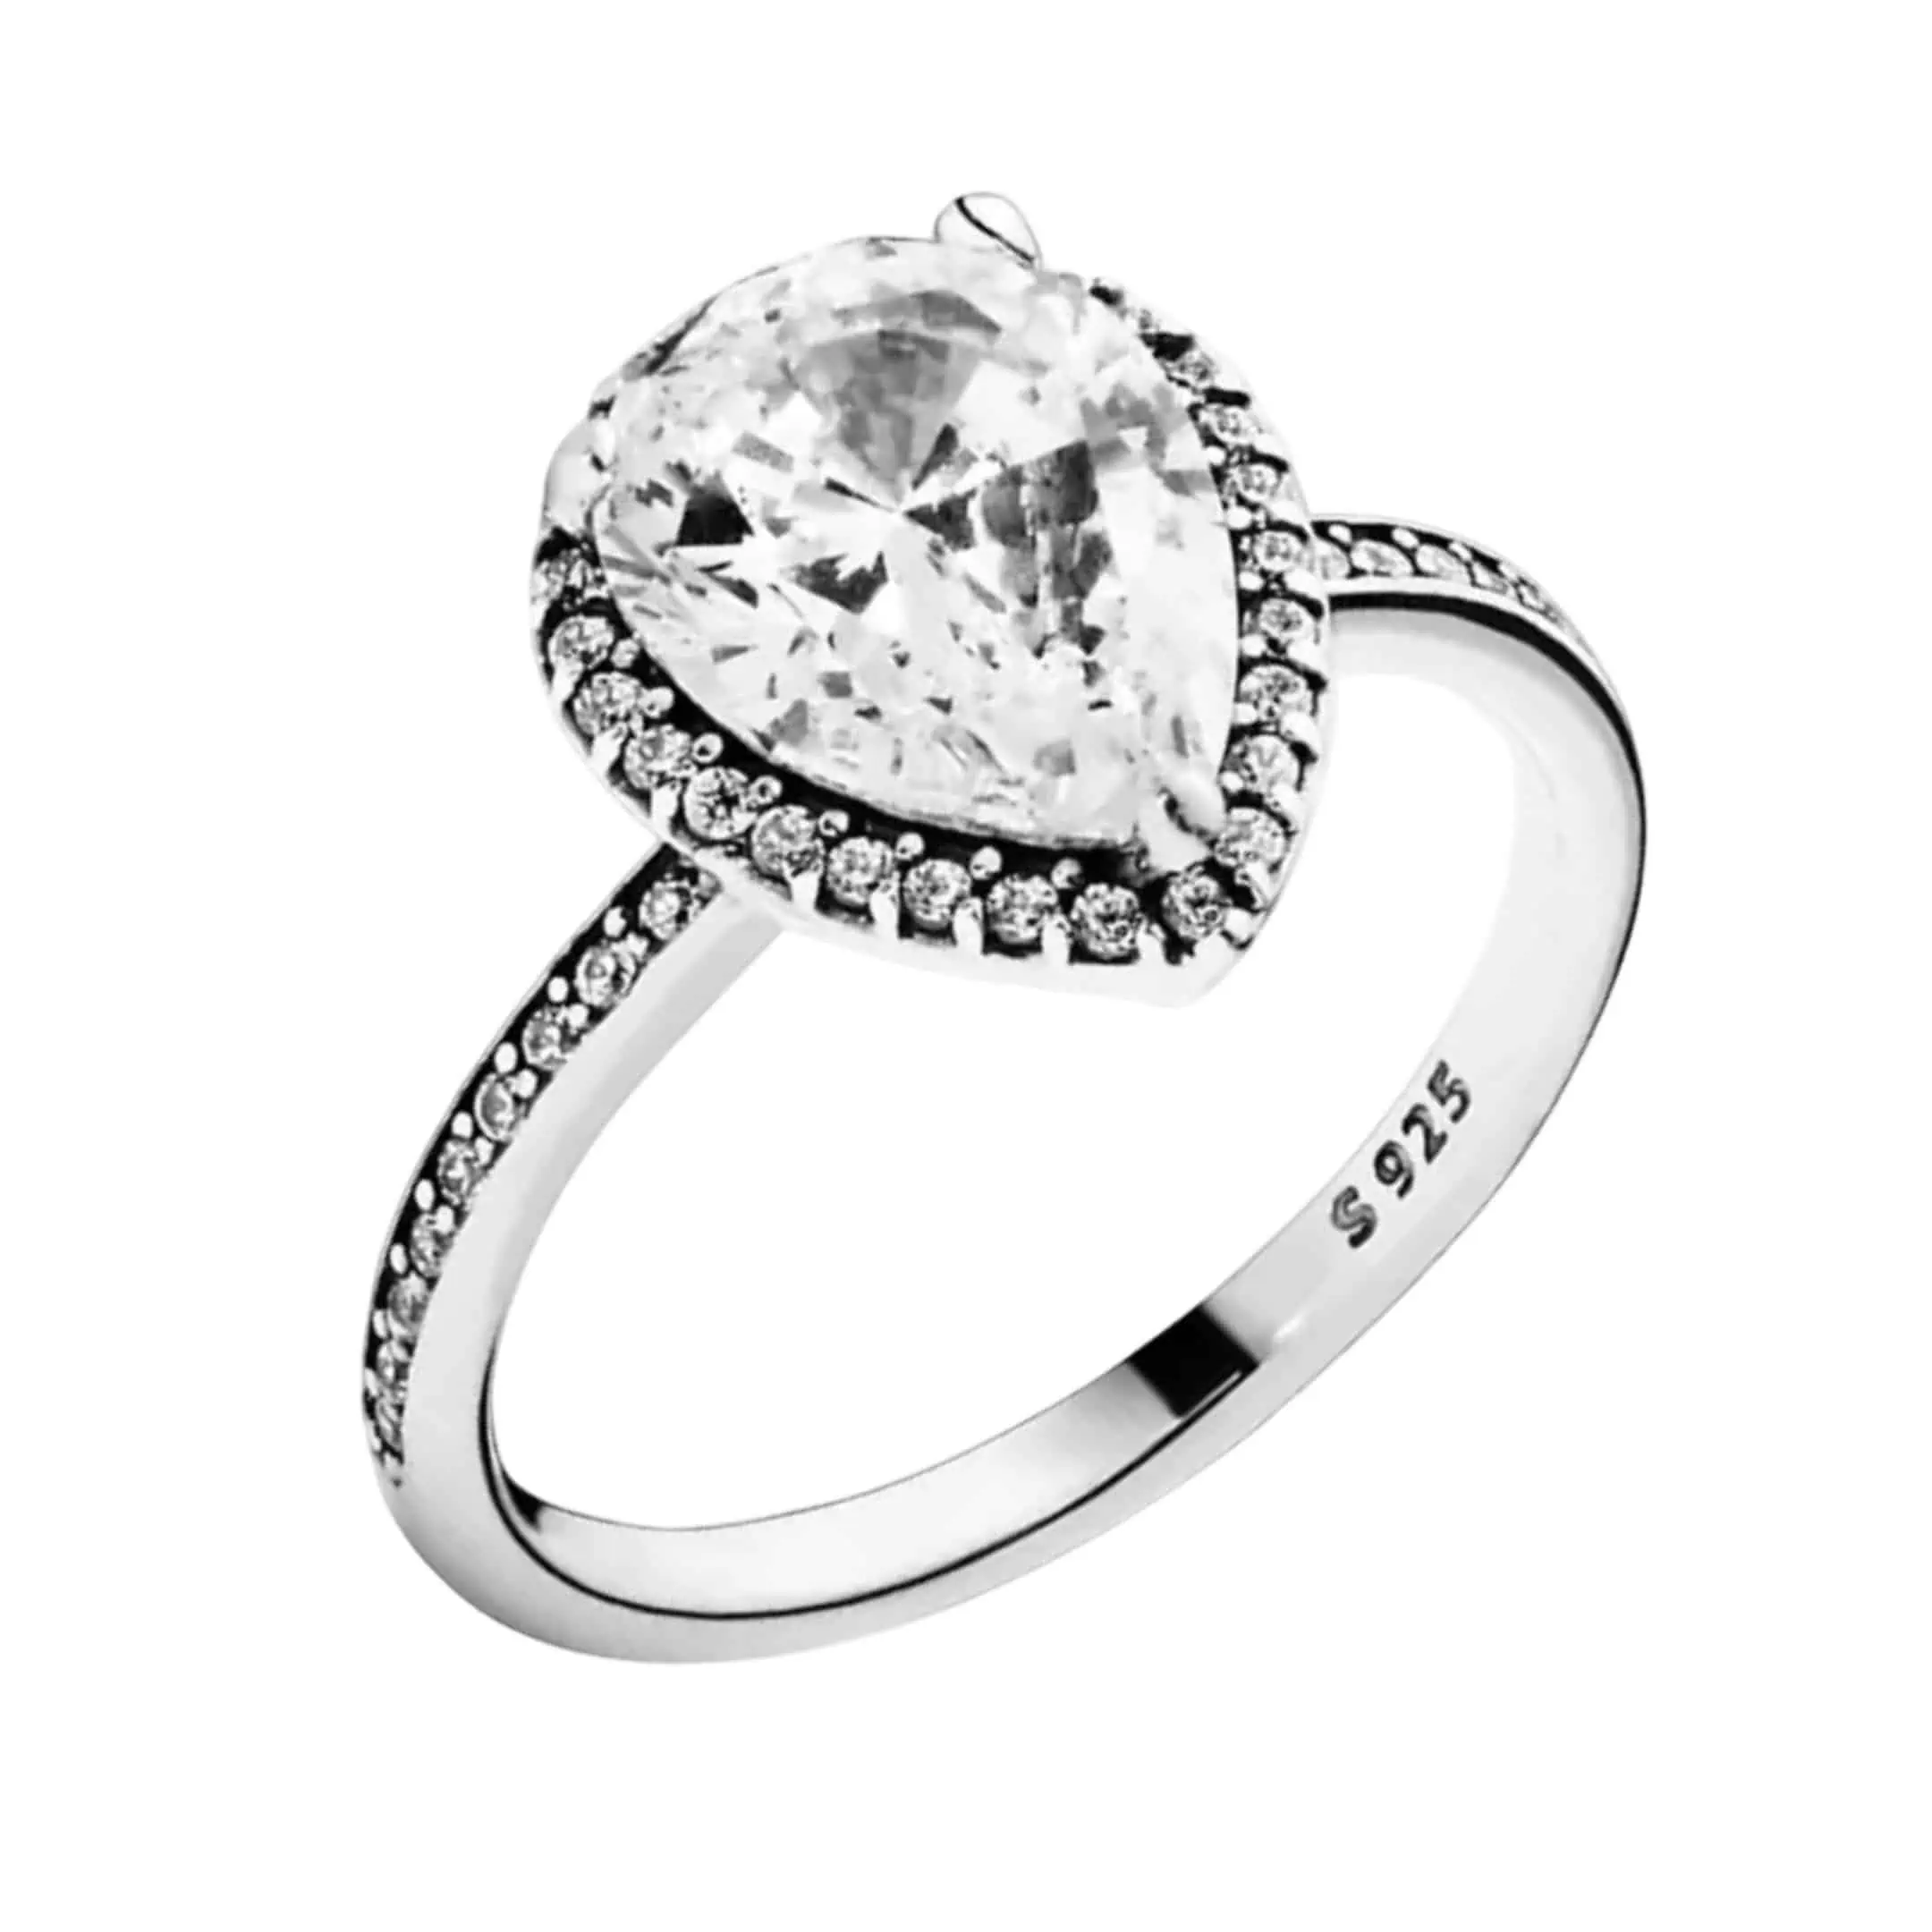 Product Afbeelding Vooraanzicht van onze prachtige nieuw ring druppel uit de collectie ringen. Deze druppel ring is gemaakt van 925 sterling zilver met een grote druppel zirkonia steen met rondom kleine zirkonia steentjes.